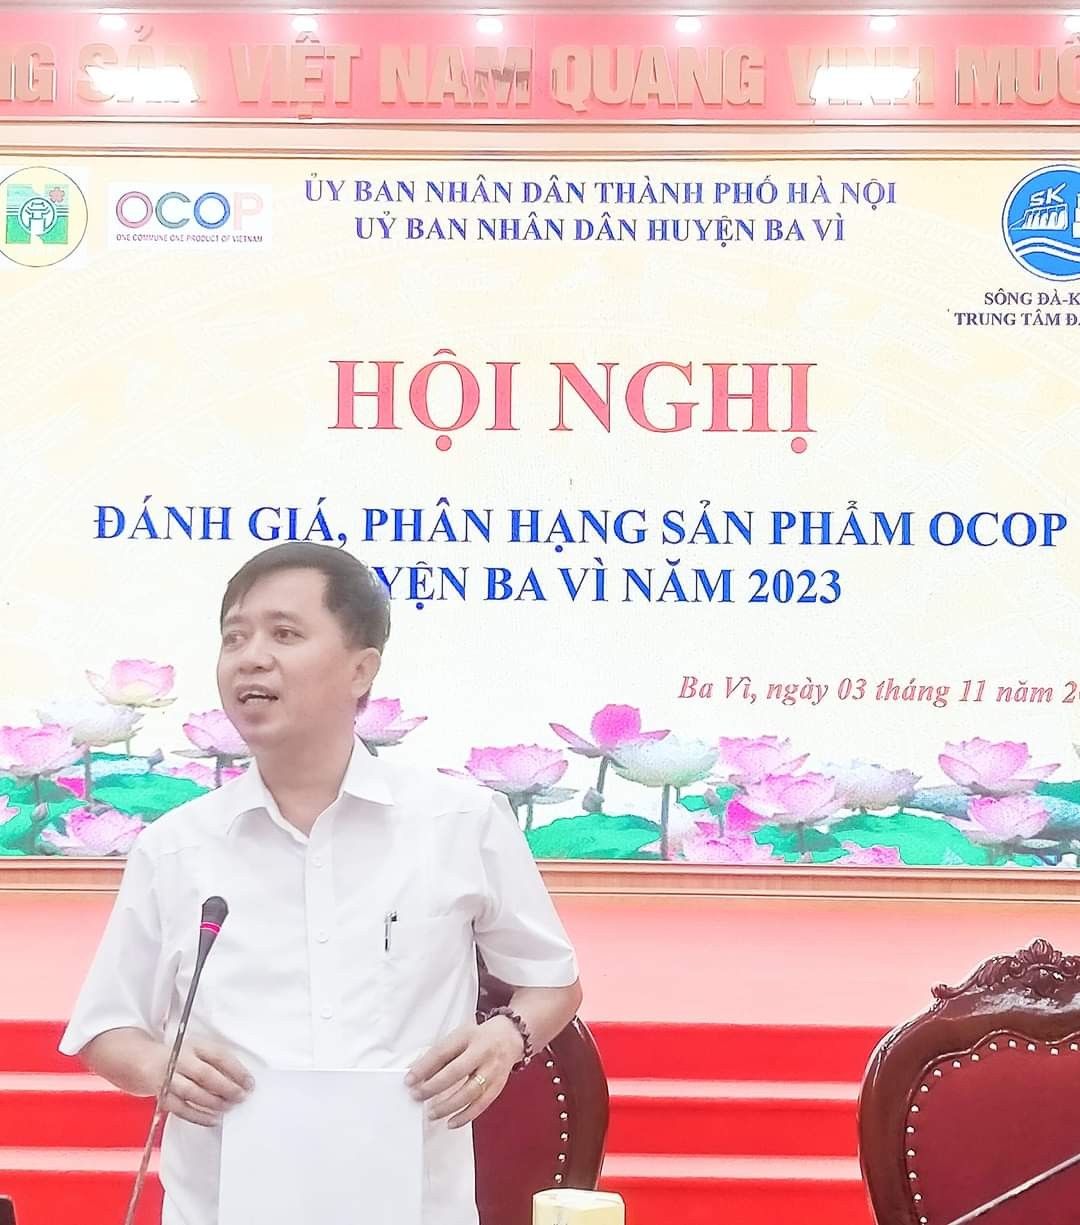 Huyện Ba Vì (Hà Nội) :  Đánh giá, phân hạng sản phẩm OCOP huyện Ba Vì năm 2023.